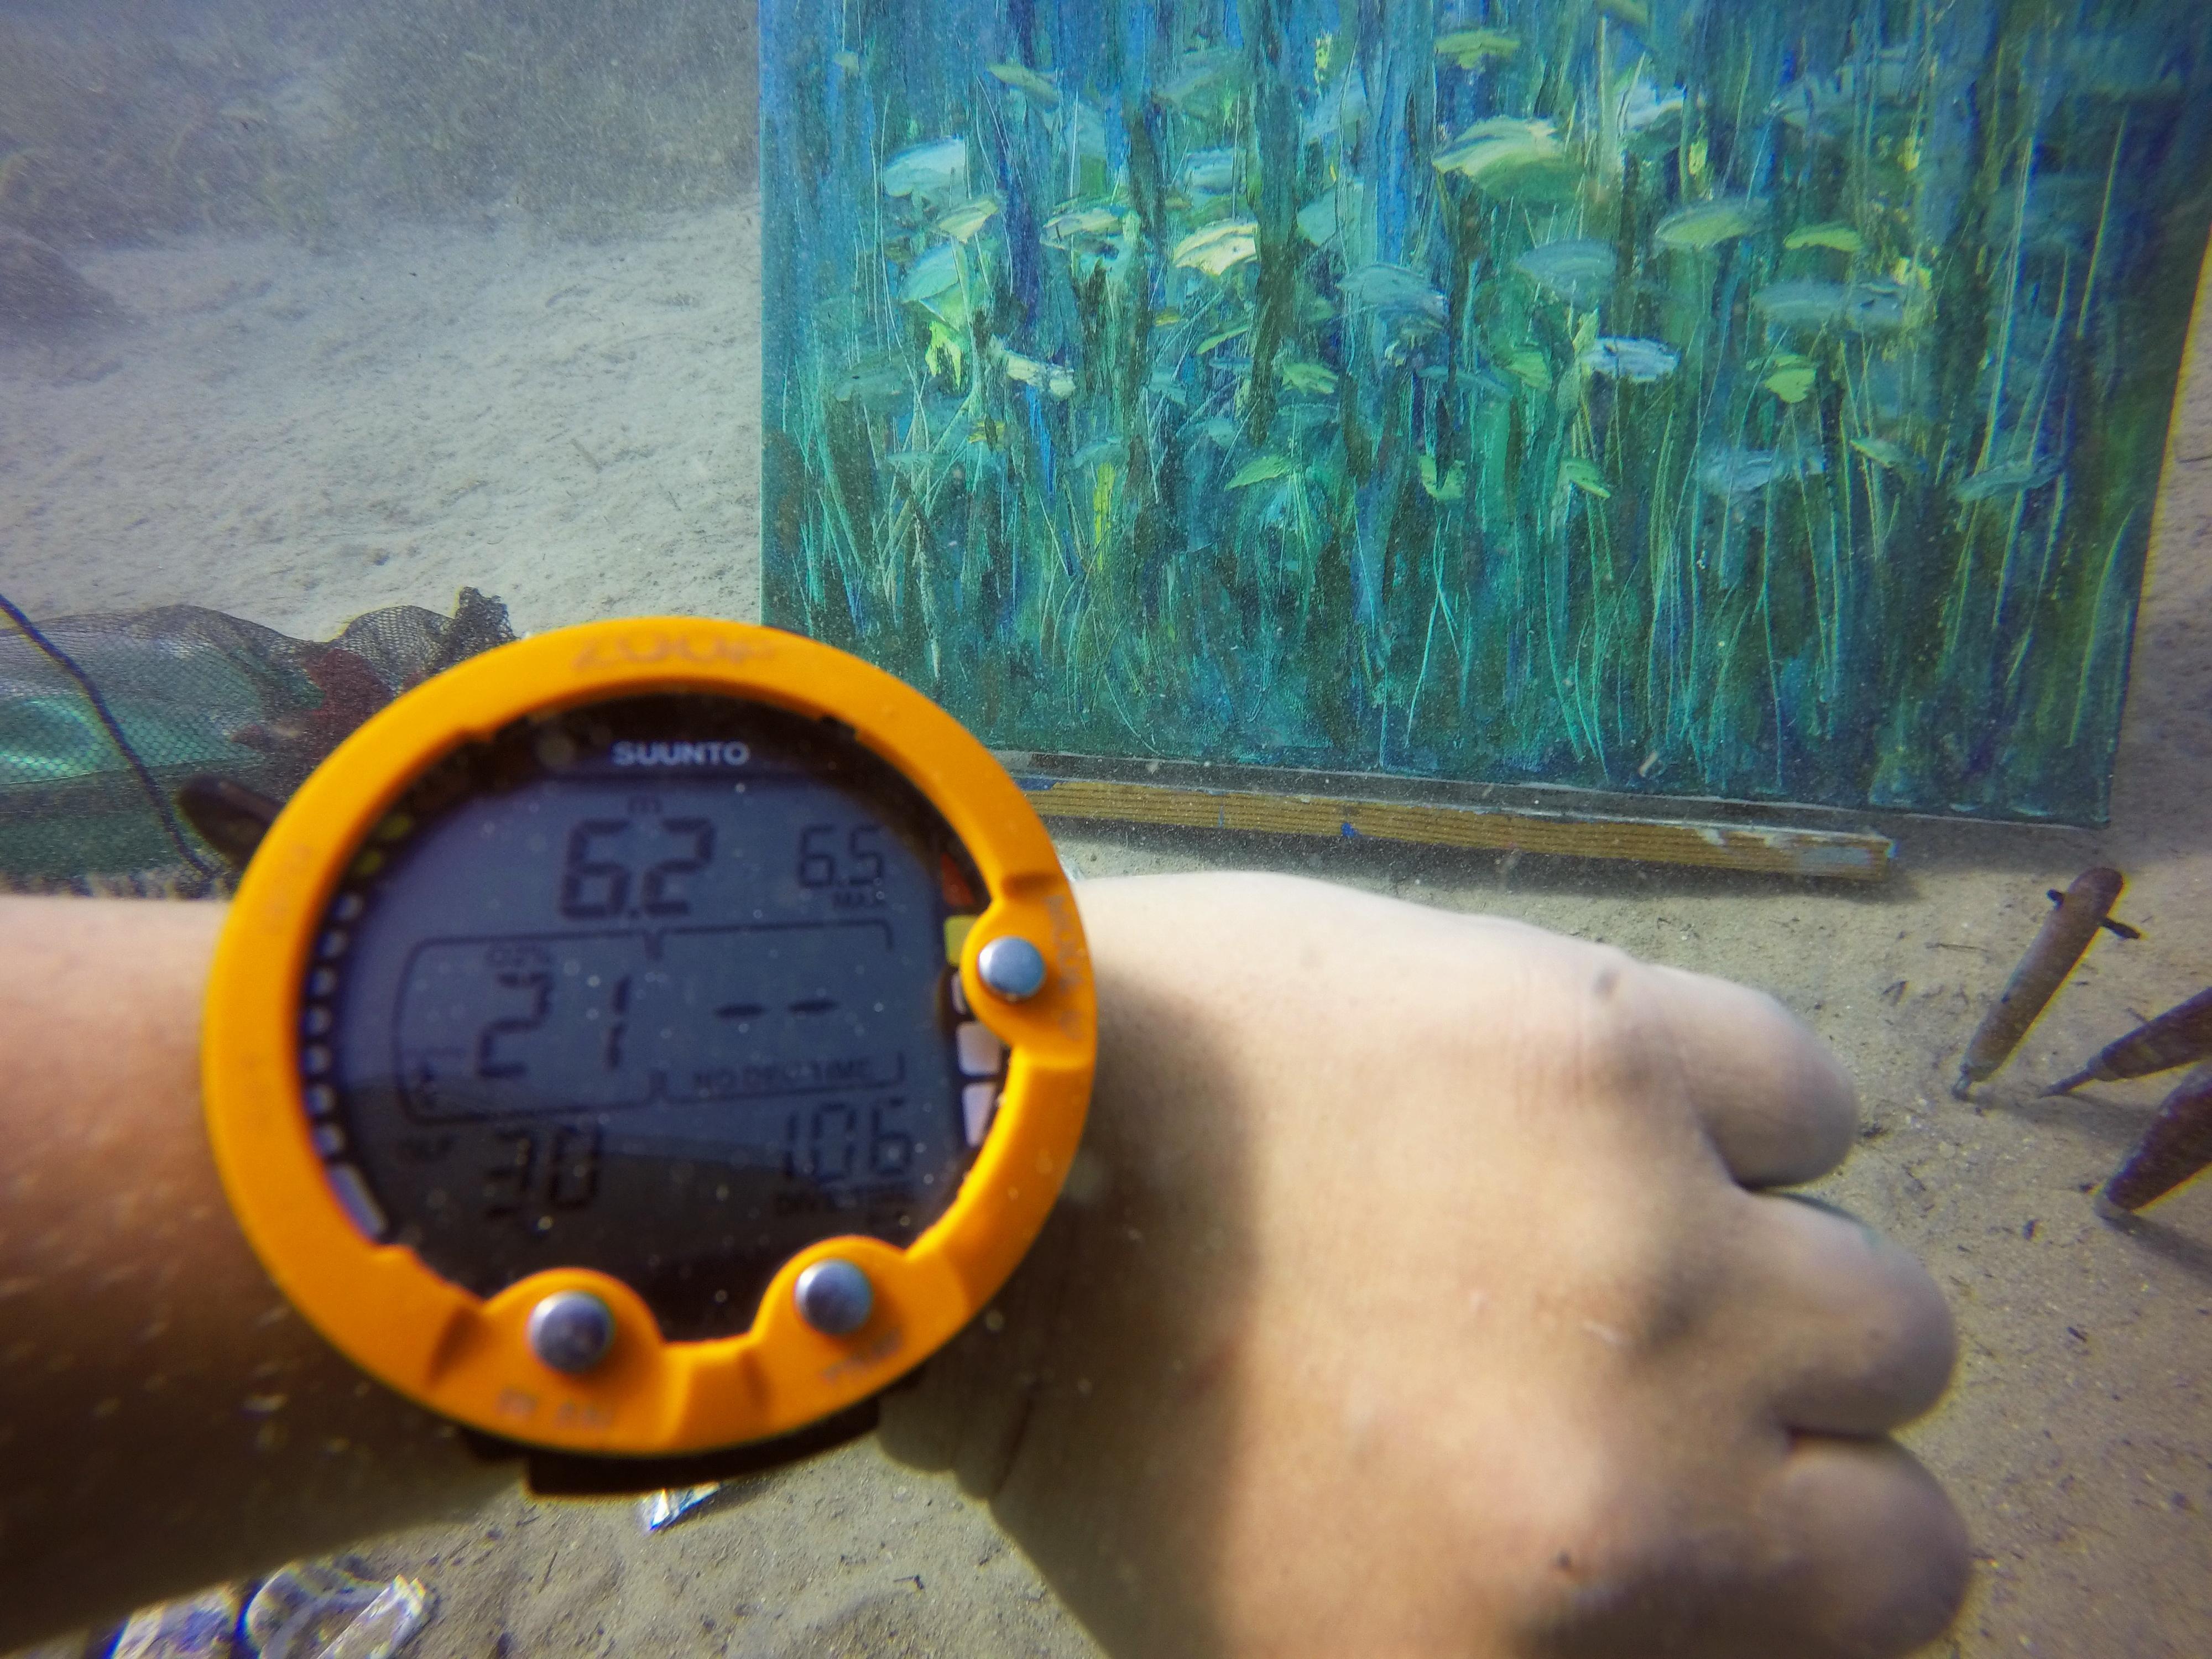 Unterwassermalerei - eine neue, schnell wachsende Richtung in der zeitgenössischen Kunst. Die Kunstwerke wurden unter Wasser in einer Tiefe von  6,2 Meter, Unterwasser-Malsitzung 106 Minuten. 

Es ist eine intuitive Malerei, die auf Gefühlen und